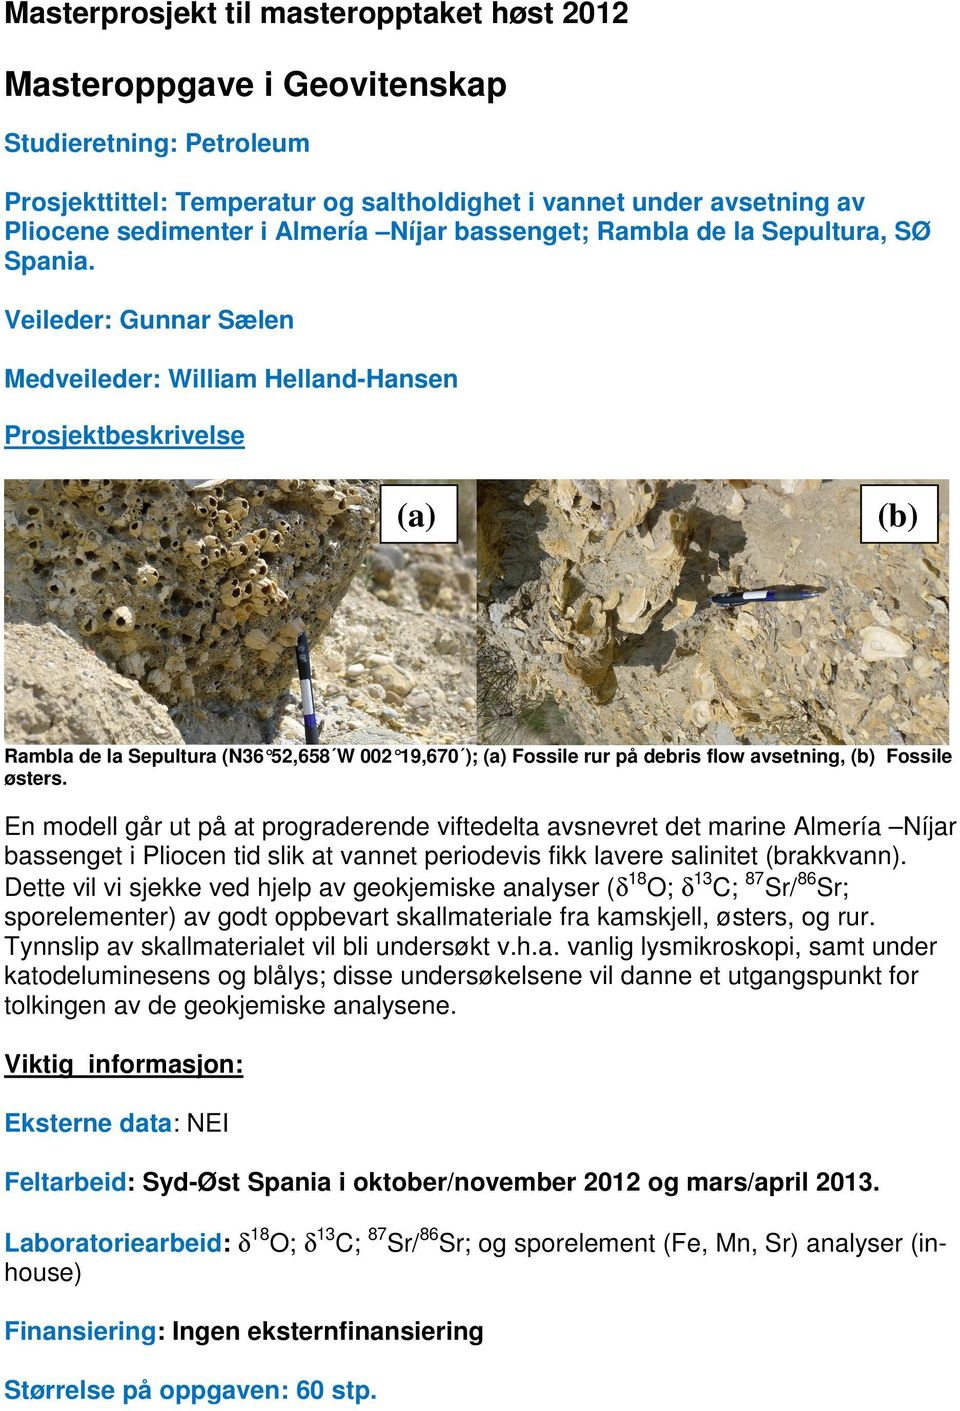 Veileder: Gunnar Sælen Medveileder: William Helland-Hansen Prosjektbeskrivelse (a) (b) Rambla de la Sepultura (N36 52,658 W 002 19,670 ); (a) Fossile rur på debris flow avsetning, (b) Fossile østers.